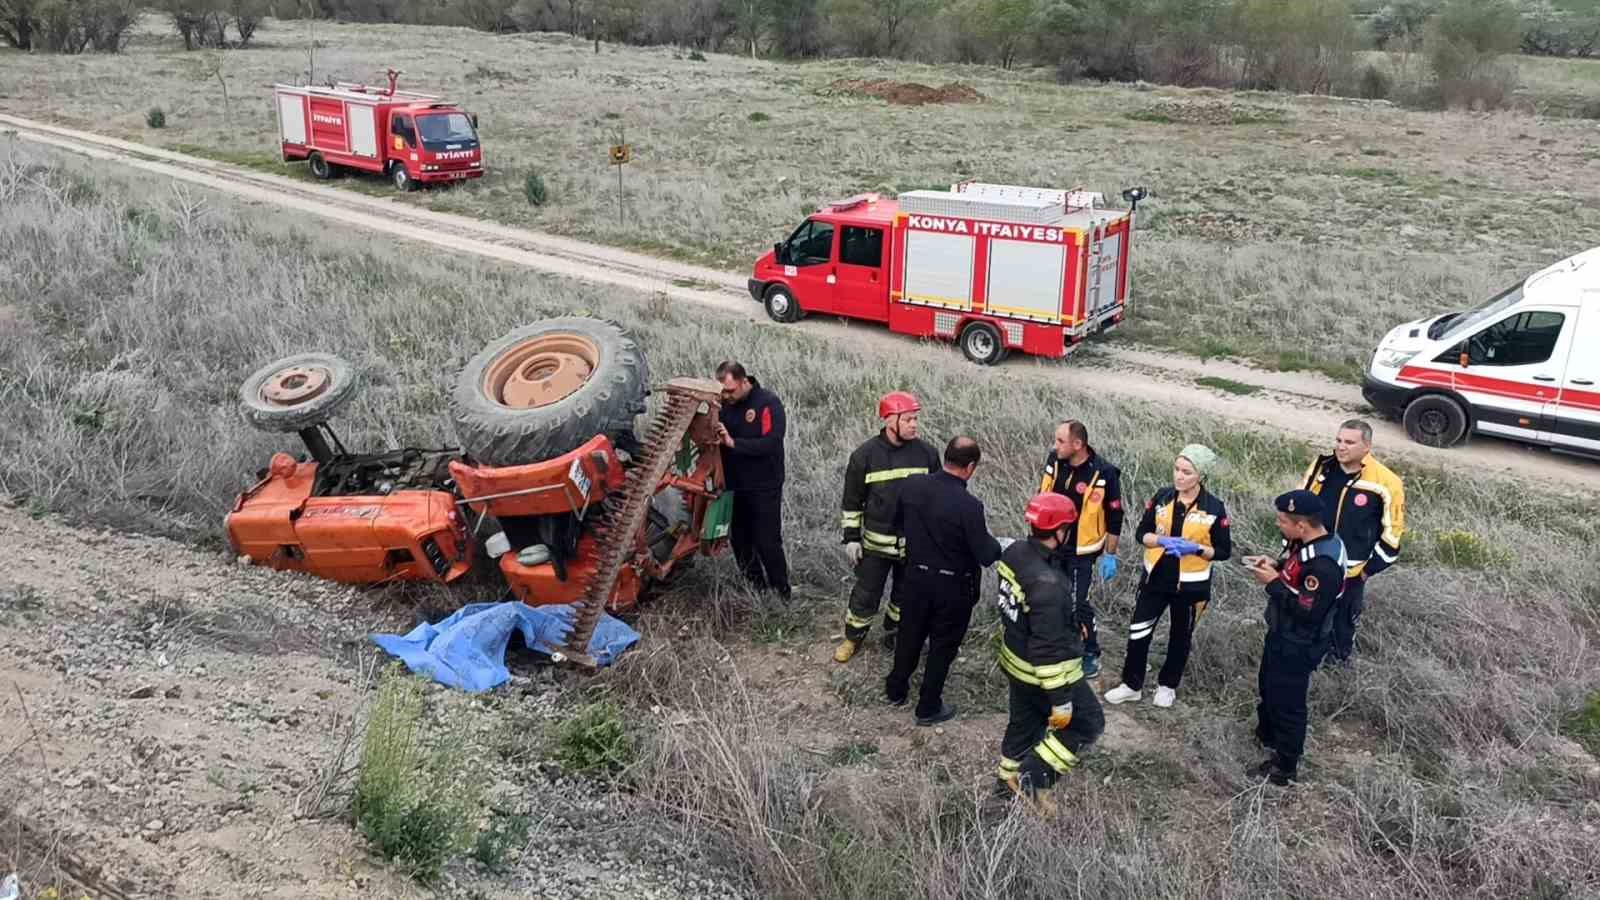 Şarampole devrilen traktörün altında kalan sürücü öldü
